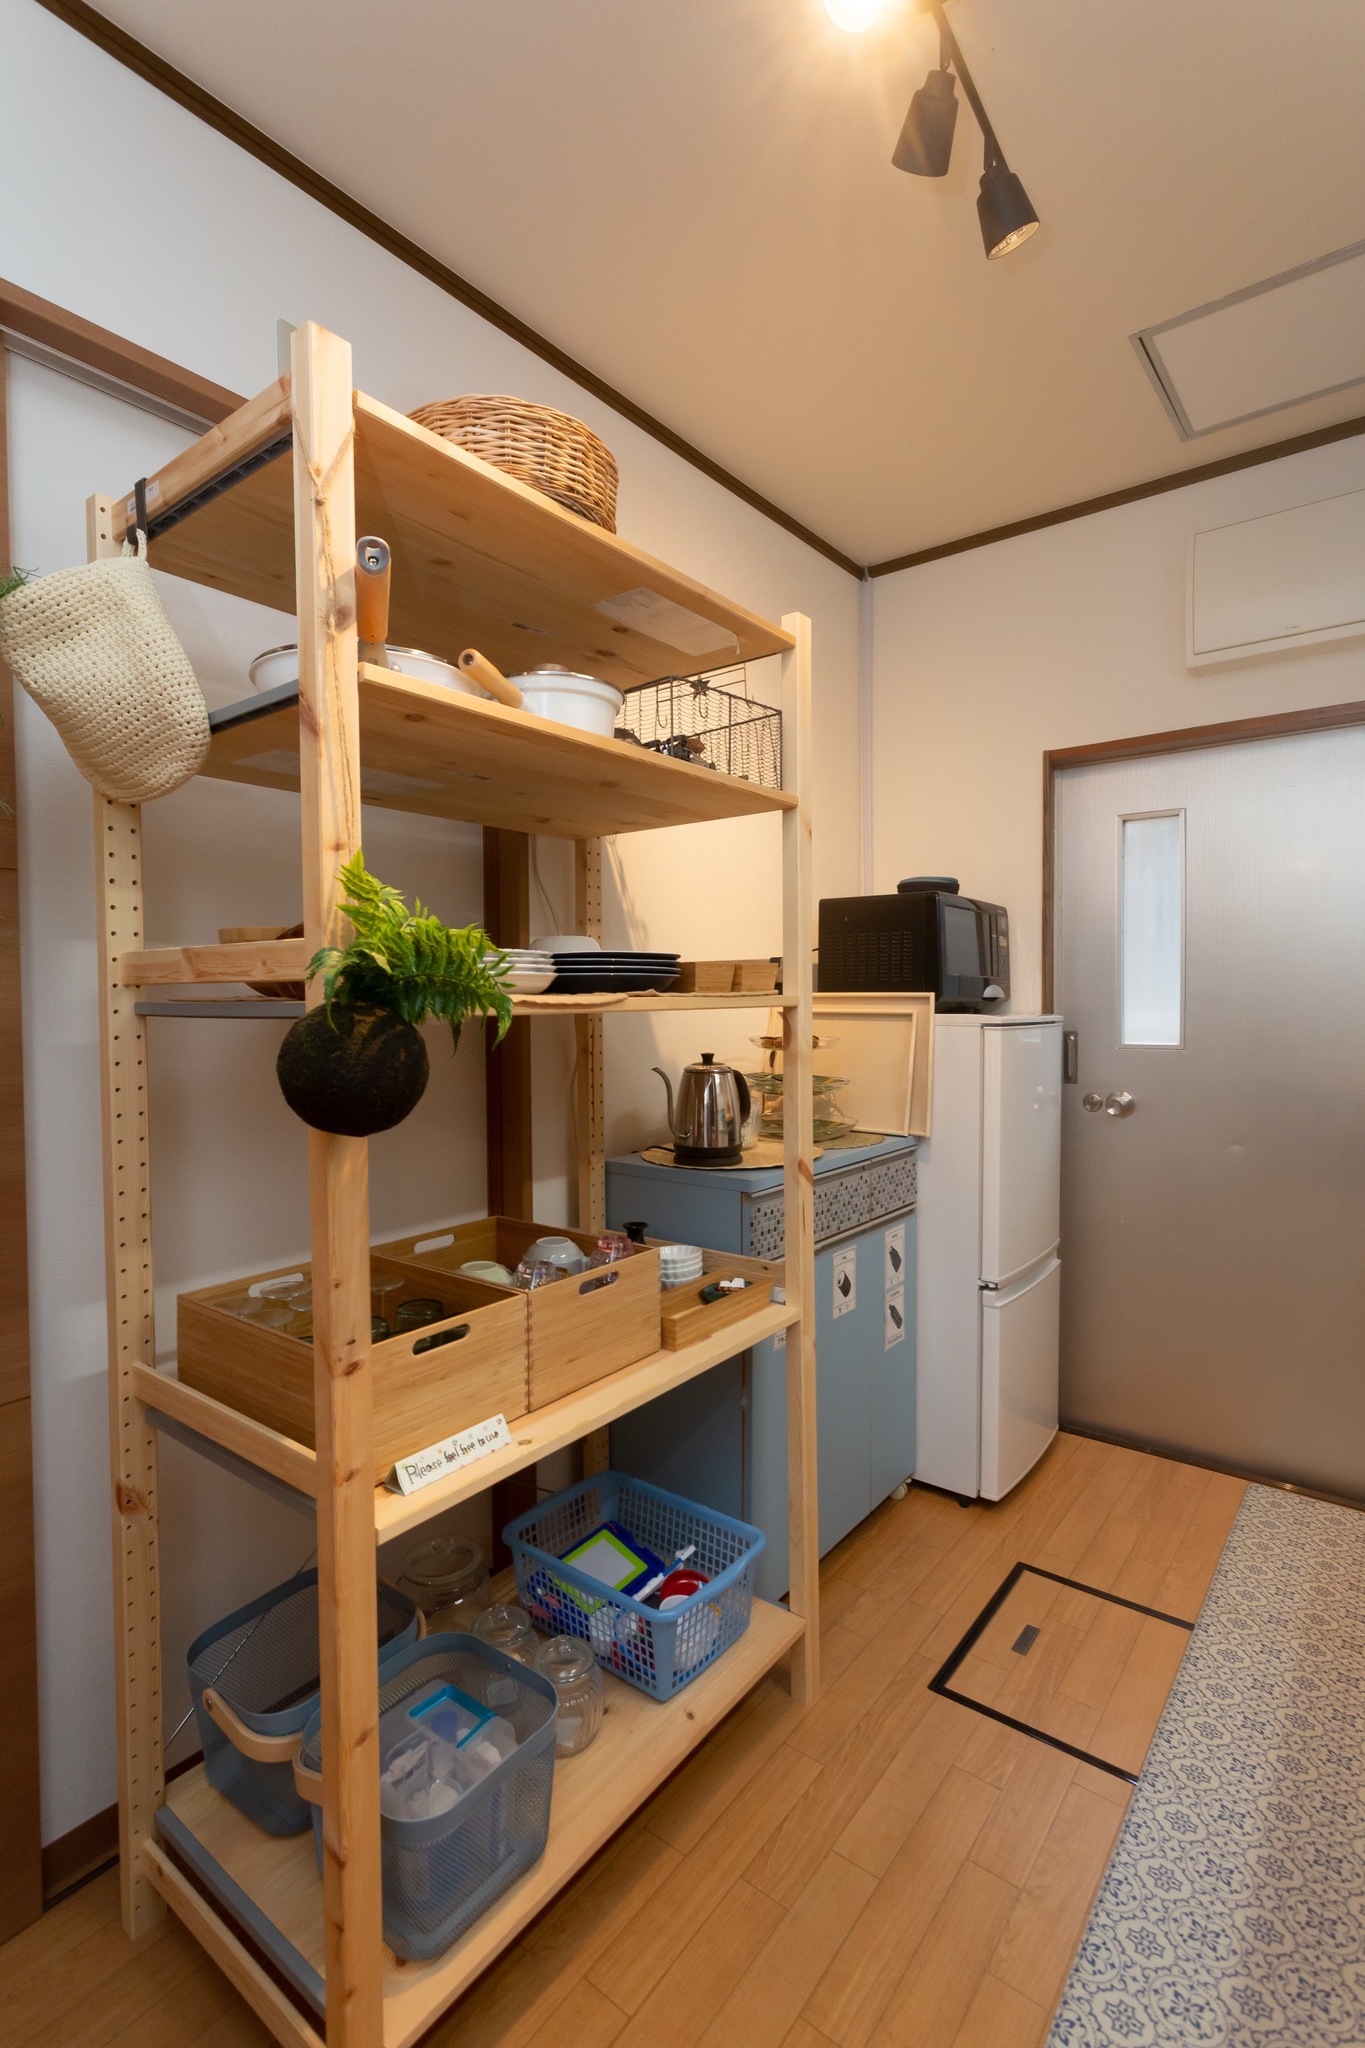 駅から3分 箱根、小田原の観光の拠点に最適 純和風な畳のお部屋